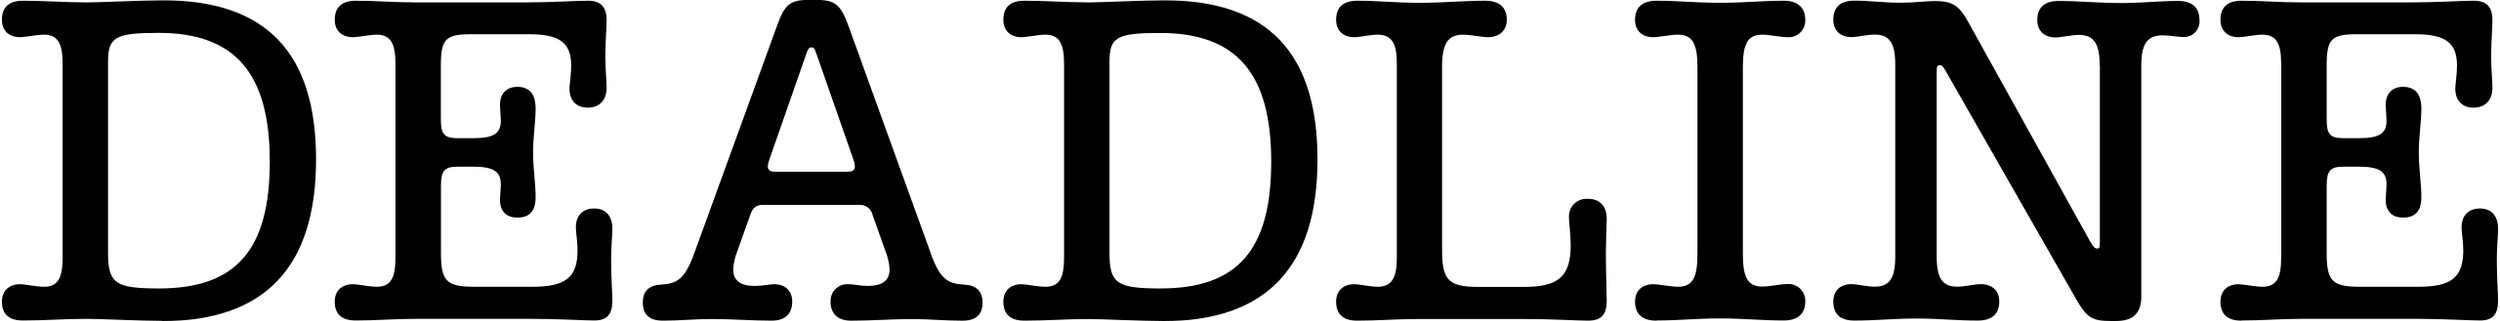 2560px-Deadline_logo.svg.png